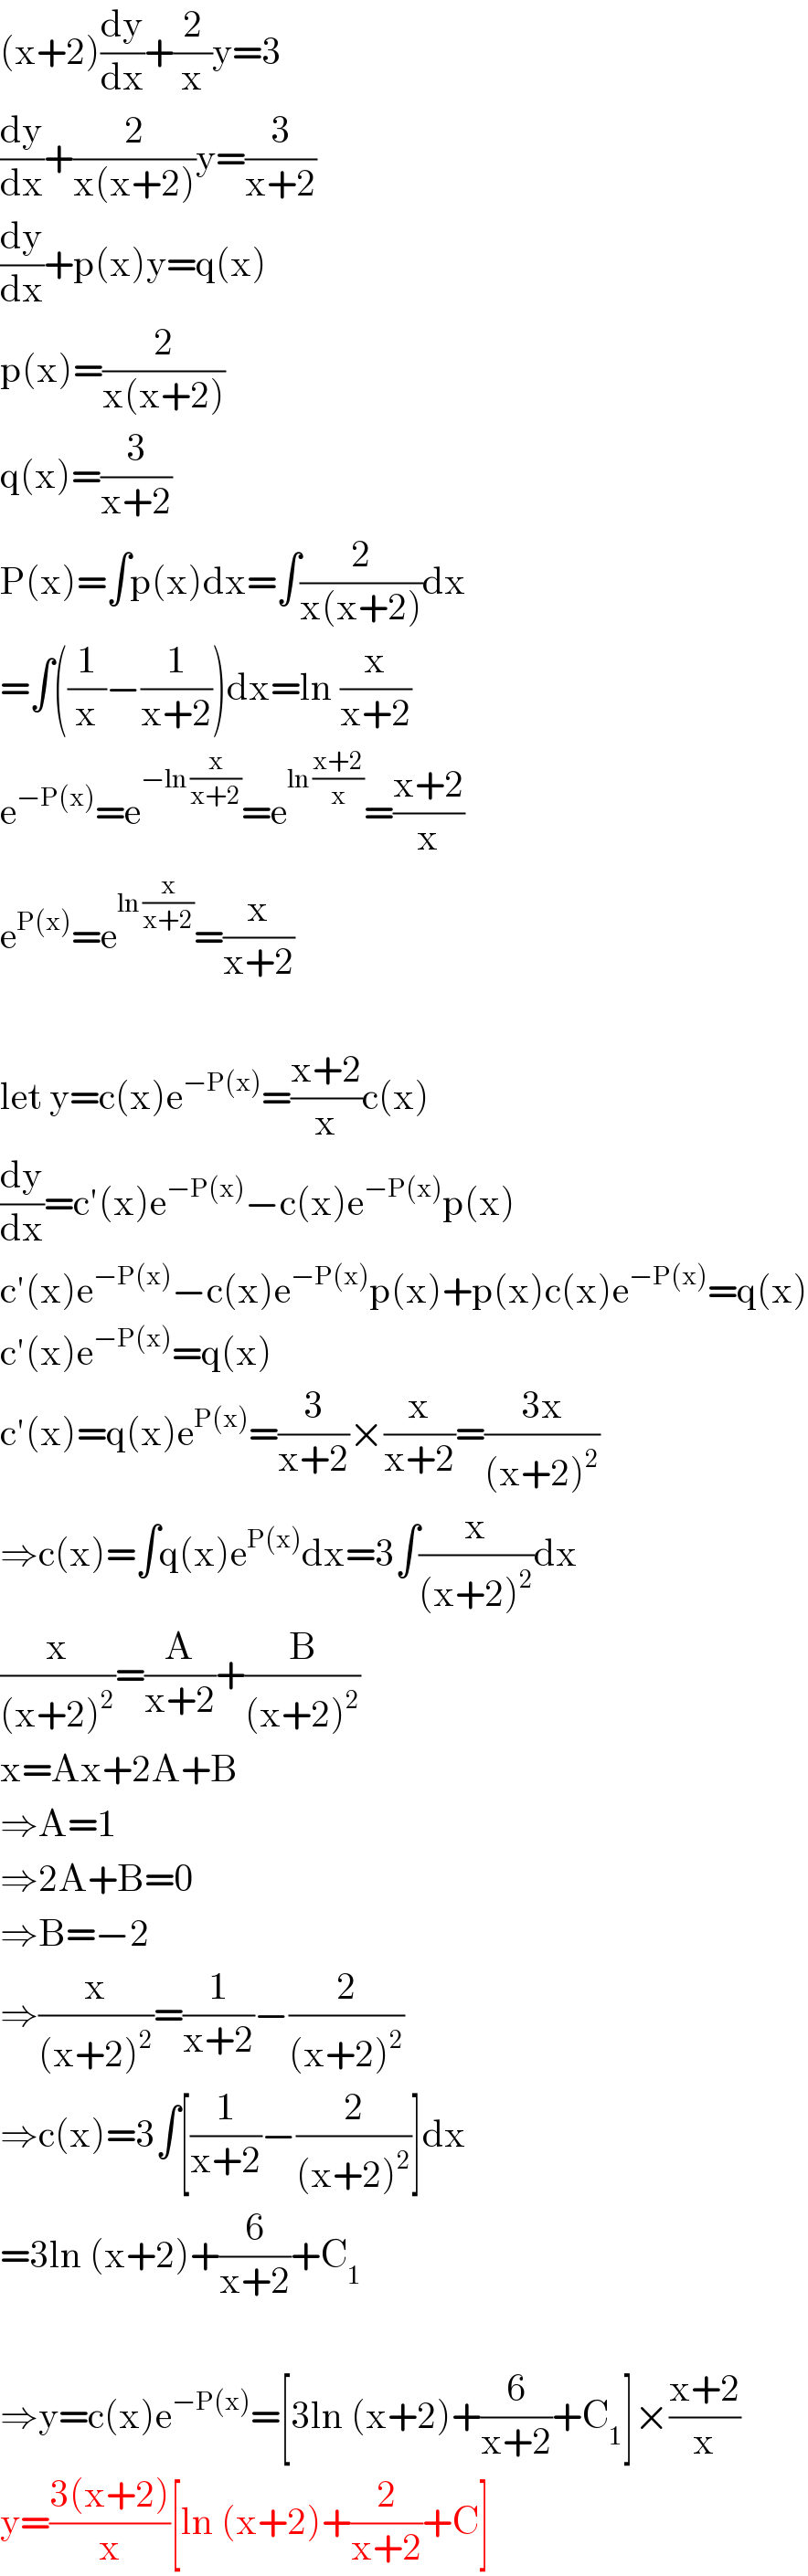 (x+2)(dy/dx)+(2/x)y=3  (dy/dx)+(2/(x(x+2)))y=(3/(x+2))  (dy/dx)+p(x)y=q(x)  p(x)=(2/(x(x+2)))  q(x)=(3/(x+2))  P(x)=∫p(x)dx=∫(2/(x(x+2)))dx  =∫((1/x)−(1/(x+2)))dx=ln (x/(x+2))  e^(−P(x)) =e^(−ln (x/(x+2))) =e^(ln ((x+2)/x)) =((x+2)/x)  e^(P(x)) =e^(ln (x/(x+2))) =(x/(x+2))    let y=c(x)e^(−P(x)) =((x+2)/x)c(x)  (dy/dx)=c′(x)e^(−P(x)) −c(x)e^(−P(x)) p(x)  c′(x)e^(−P(x)) −c(x)e^(−P(x)) p(x)+p(x)c(x)e^(−P(x)) =q(x)  c′(x)e^(−P(x)) =q(x)  c′(x)=q(x)e^(P(x)) =(3/(x+2))×(x/(x+2))=((3x)/((x+2)^2 ))  ⇒c(x)=∫q(x)e^(P(x)) dx=3∫(x/((x+2)^2 ))dx  (x/((x+2)^2 ))=(A/(x+2))+(B/((x+2)^2 ))  x=Ax+2A+B  ⇒A=1  ⇒2A+B=0  ⇒B=−2  ⇒(x/((x+2)^2 ))=(1/(x+2))−(2/((x+2)^2 ))  ⇒c(x)=3∫[(1/(x+2))−(2/((x+2)^2 ))]dx  =3ln (x+2)+(6/(x+2))+C_1     ⇒y=c(x)e^(−P(x)) =[3ln (x+2)+(6/(x+2))+C_1 ]×((x+2)/x)  y=((3(x+2))/x)[ln (x+2)+(2/(x+2))+C]  